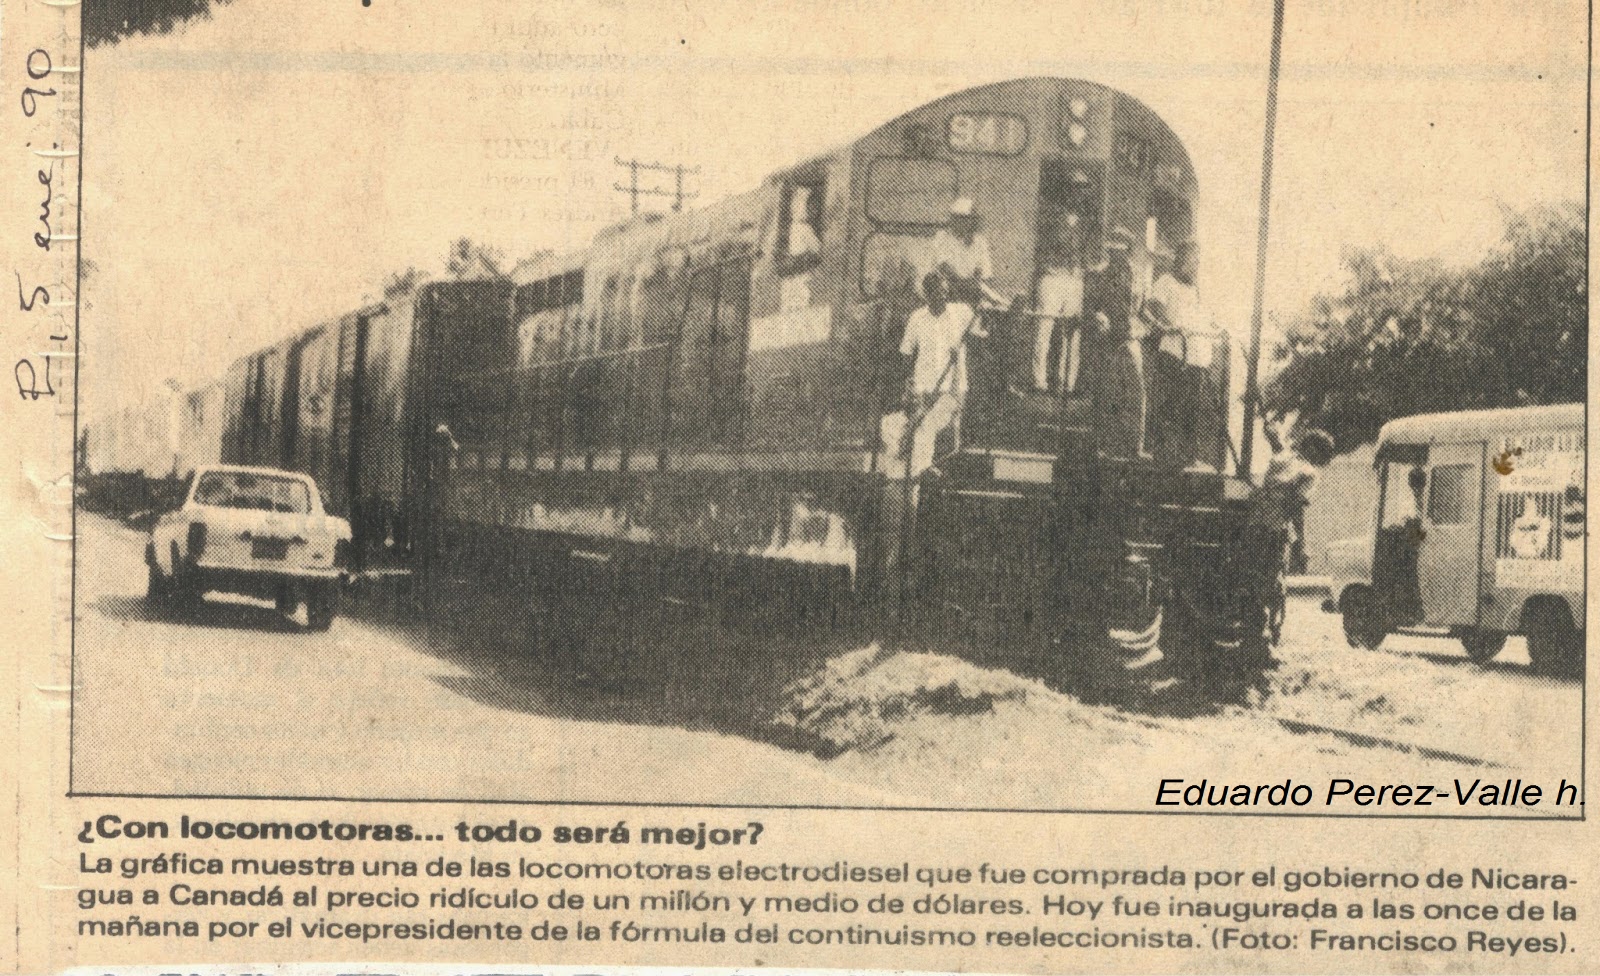 Locomotive Num. 5 newspaper photo when new